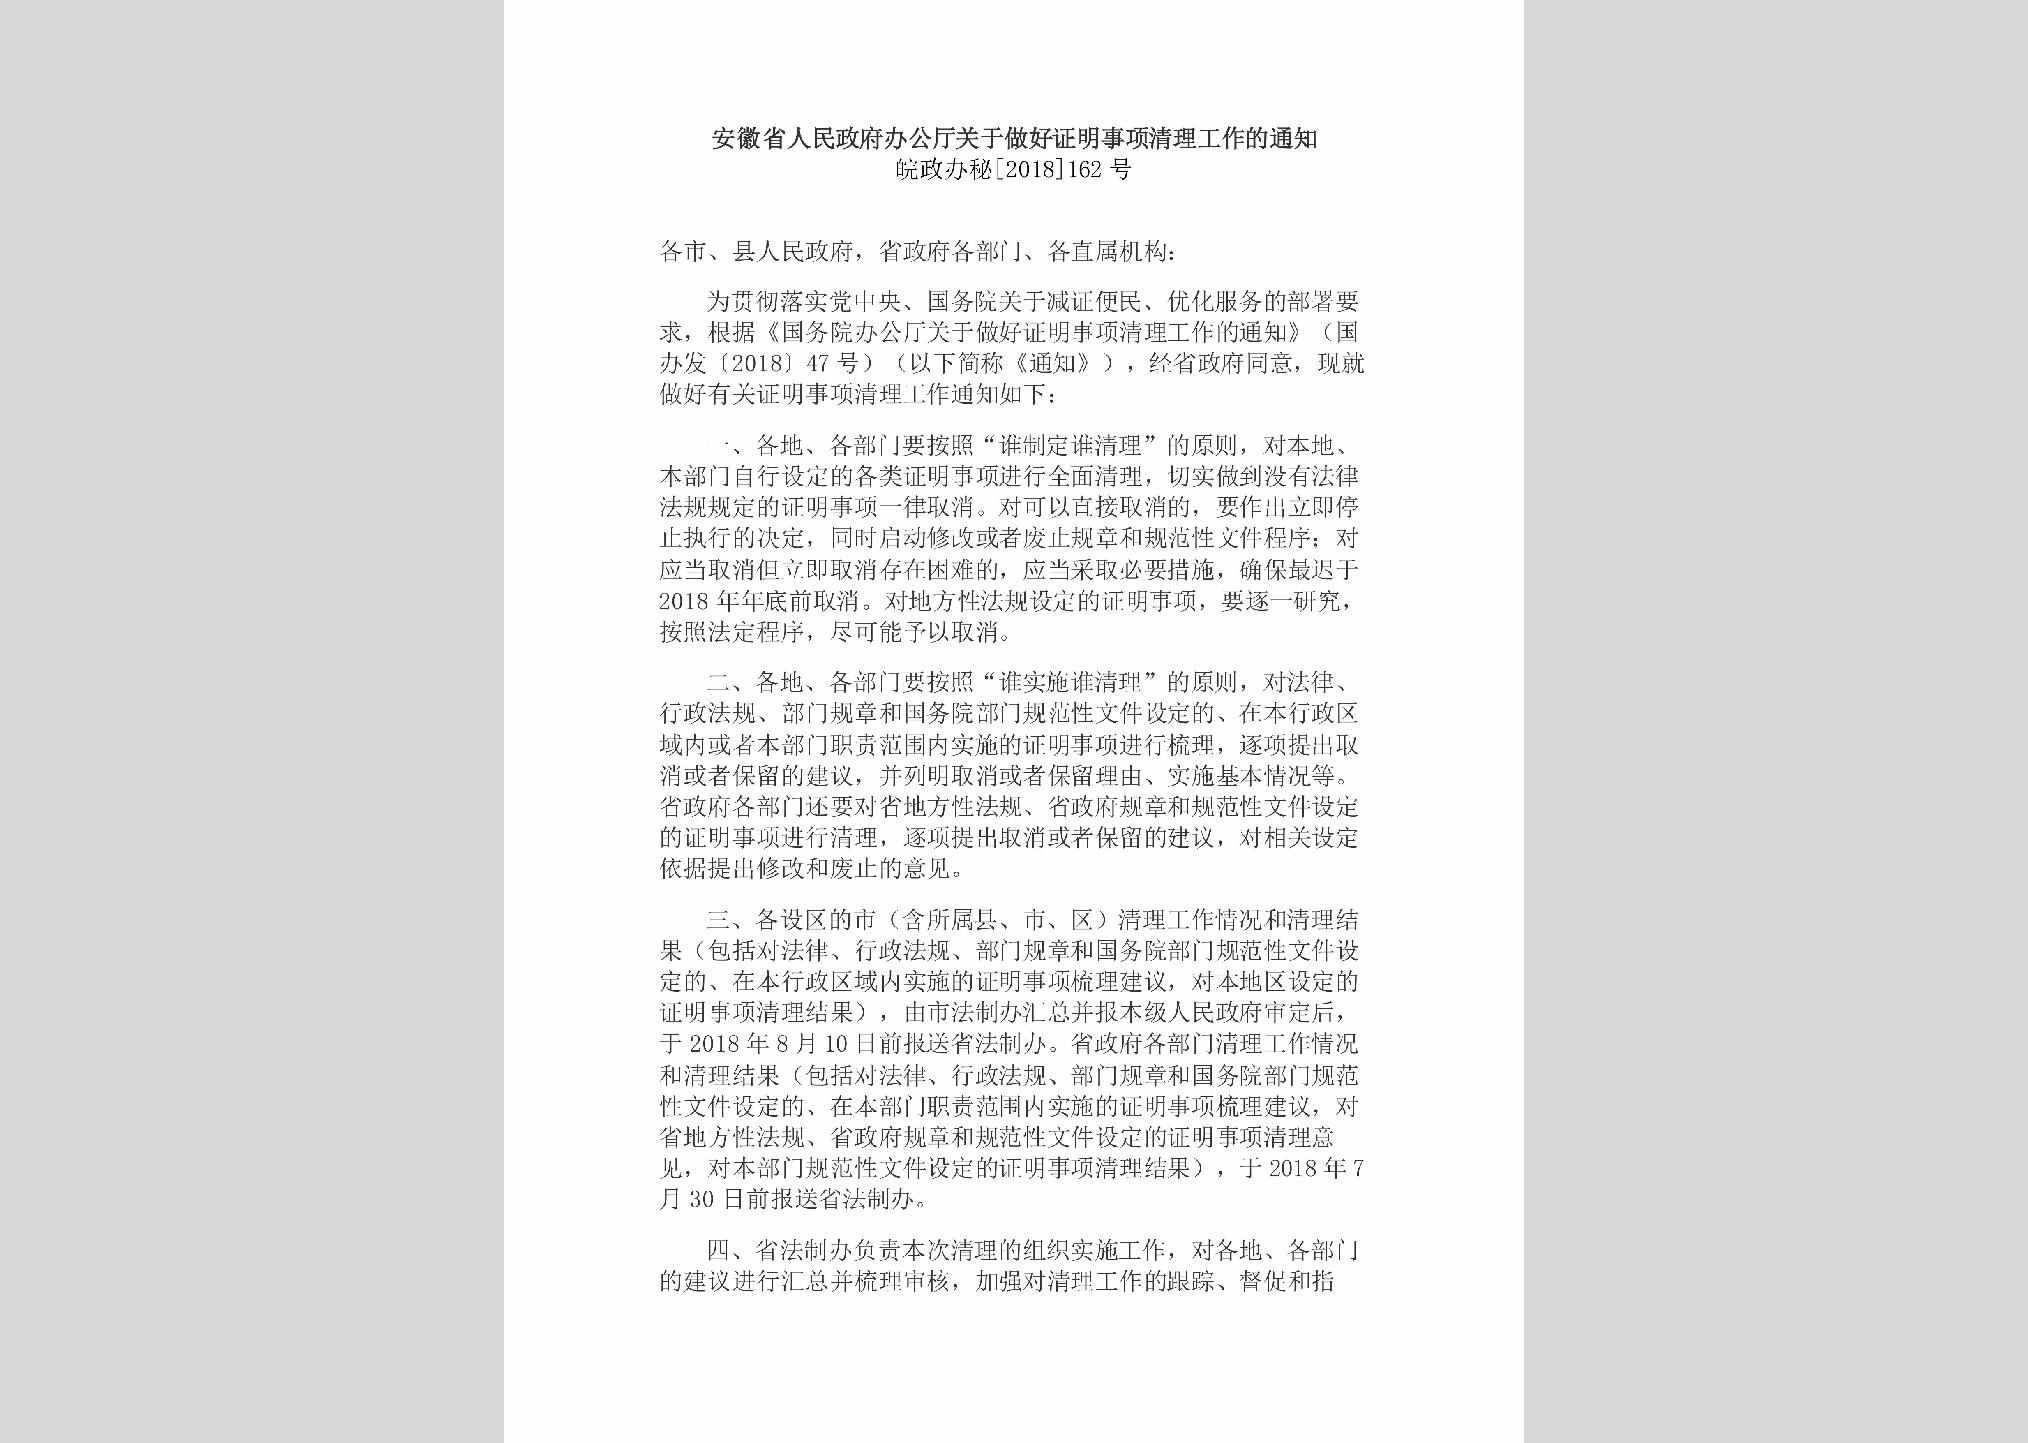 皖政办秘[2018]162号：安徽省人民政府办公厅关于做好证明事项清理工作的通知